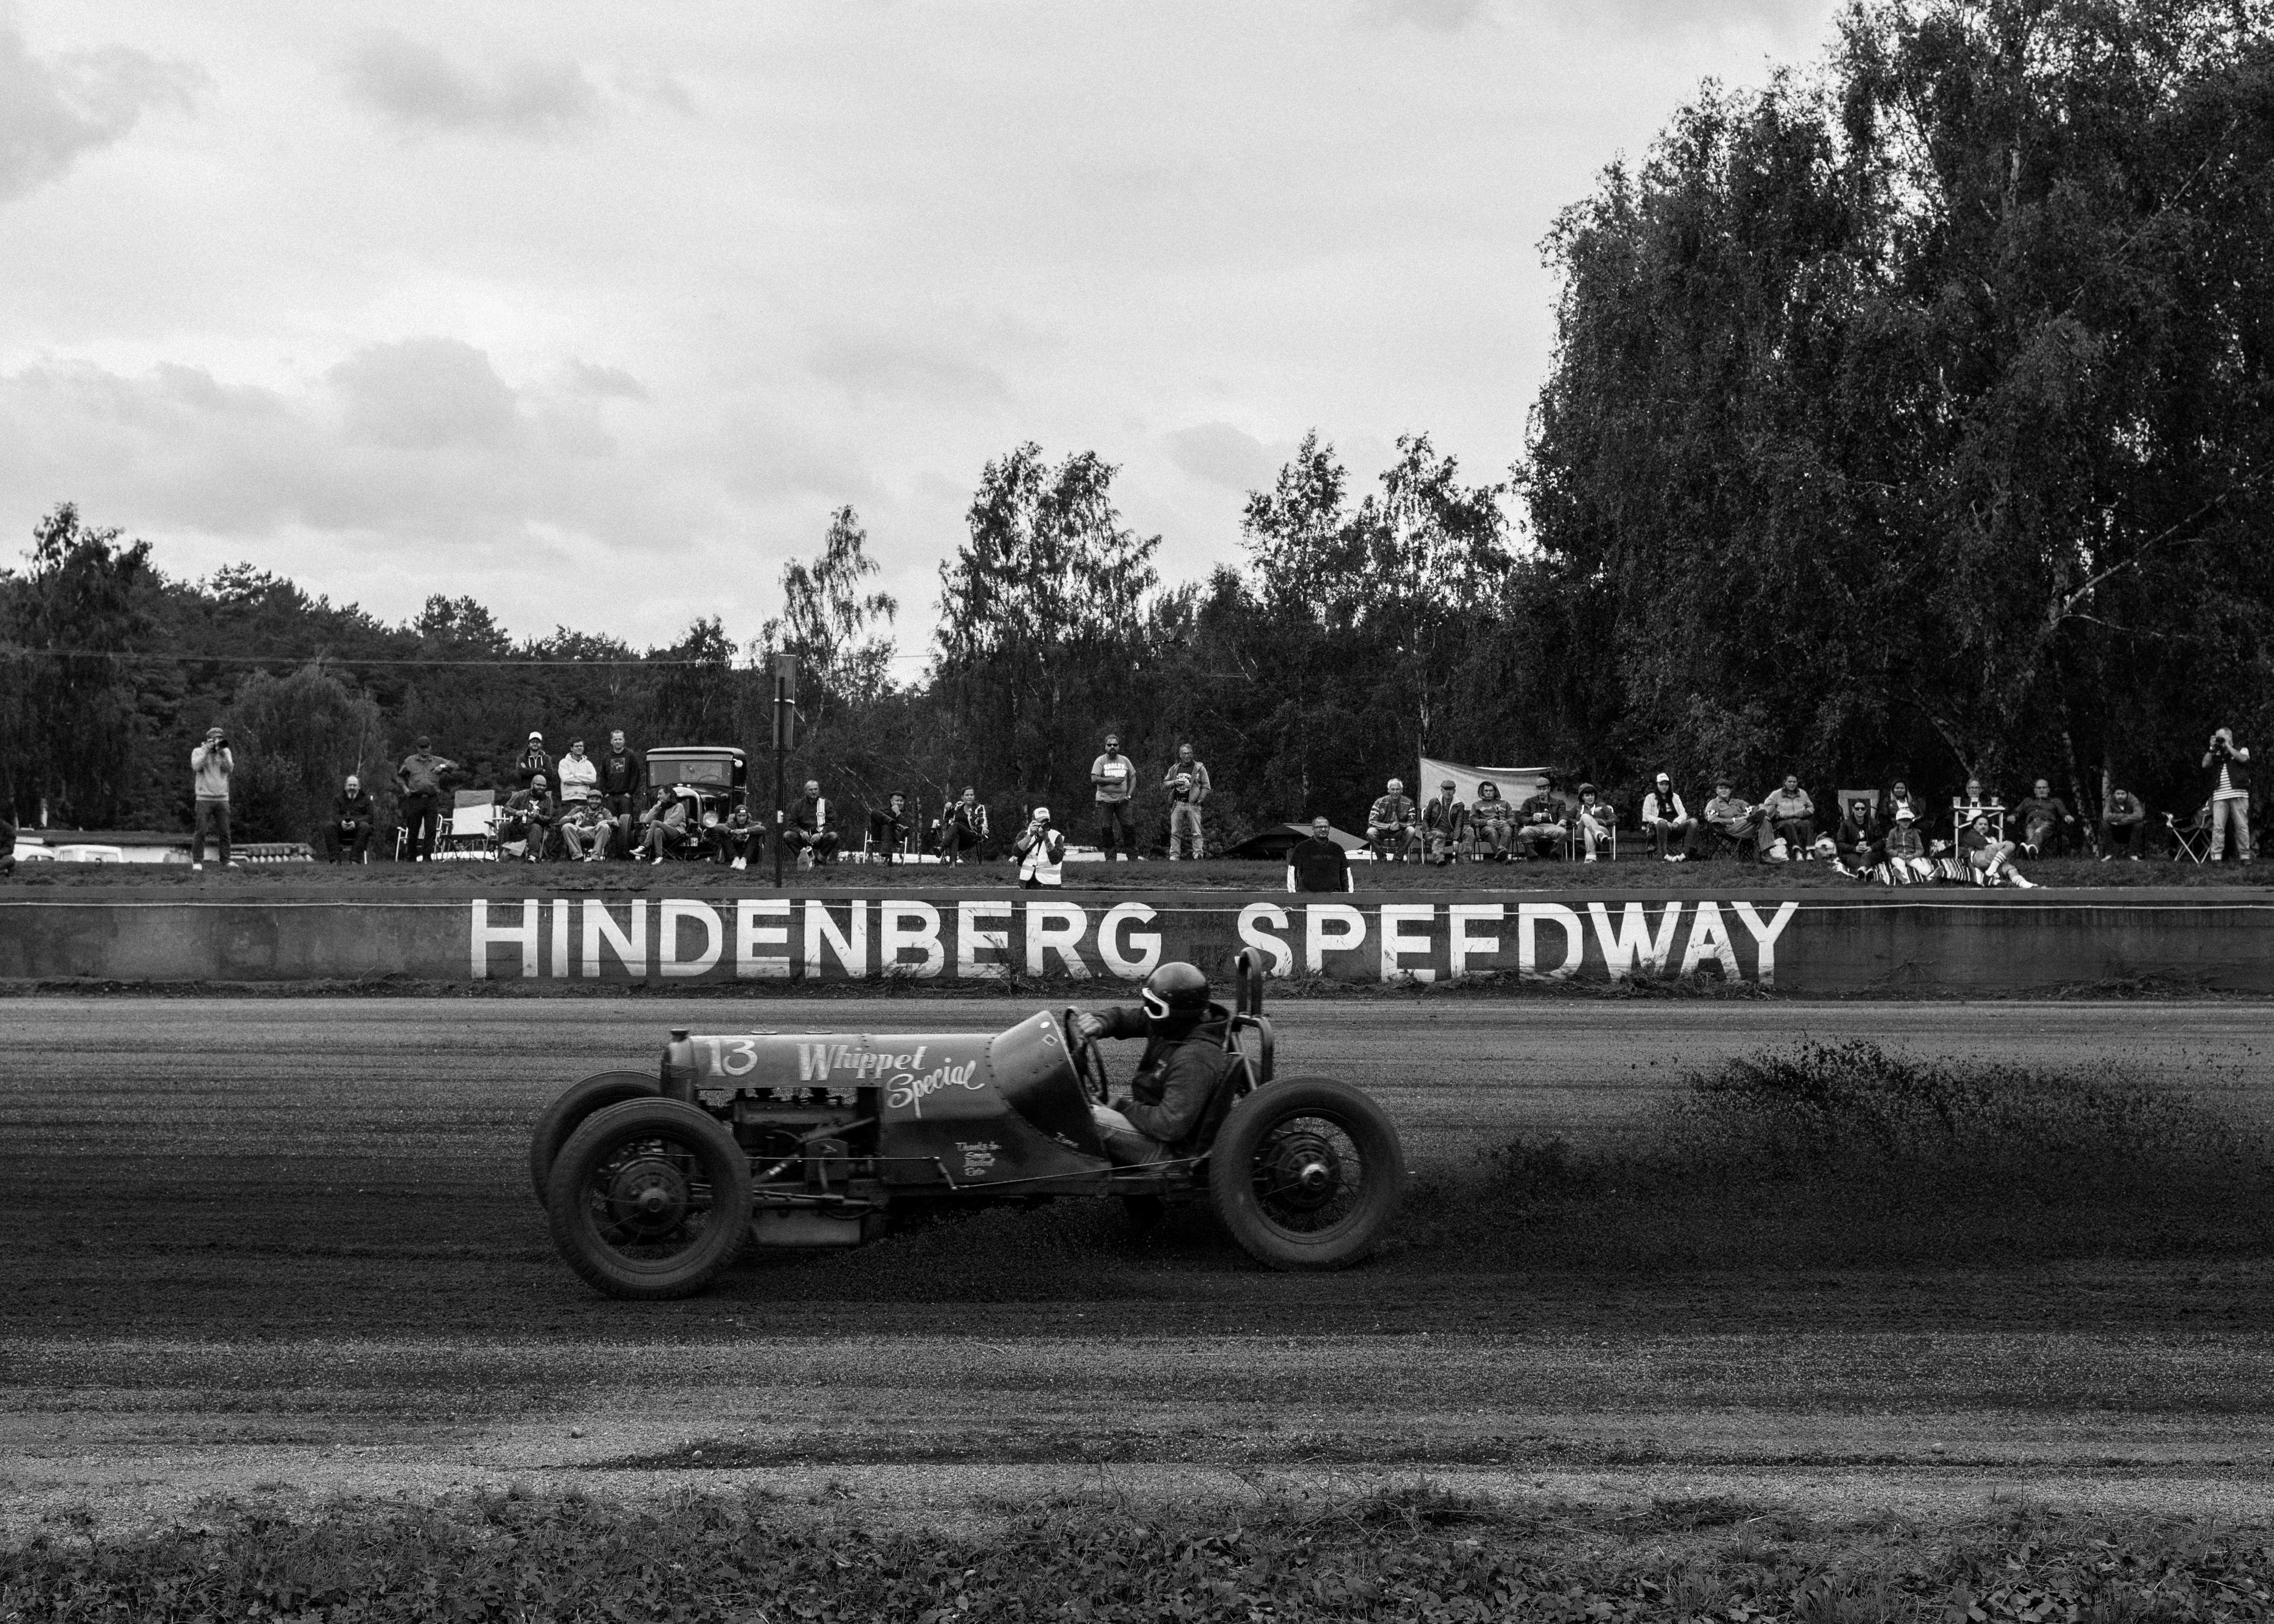 Hindenberg_Nicolas Prado-3